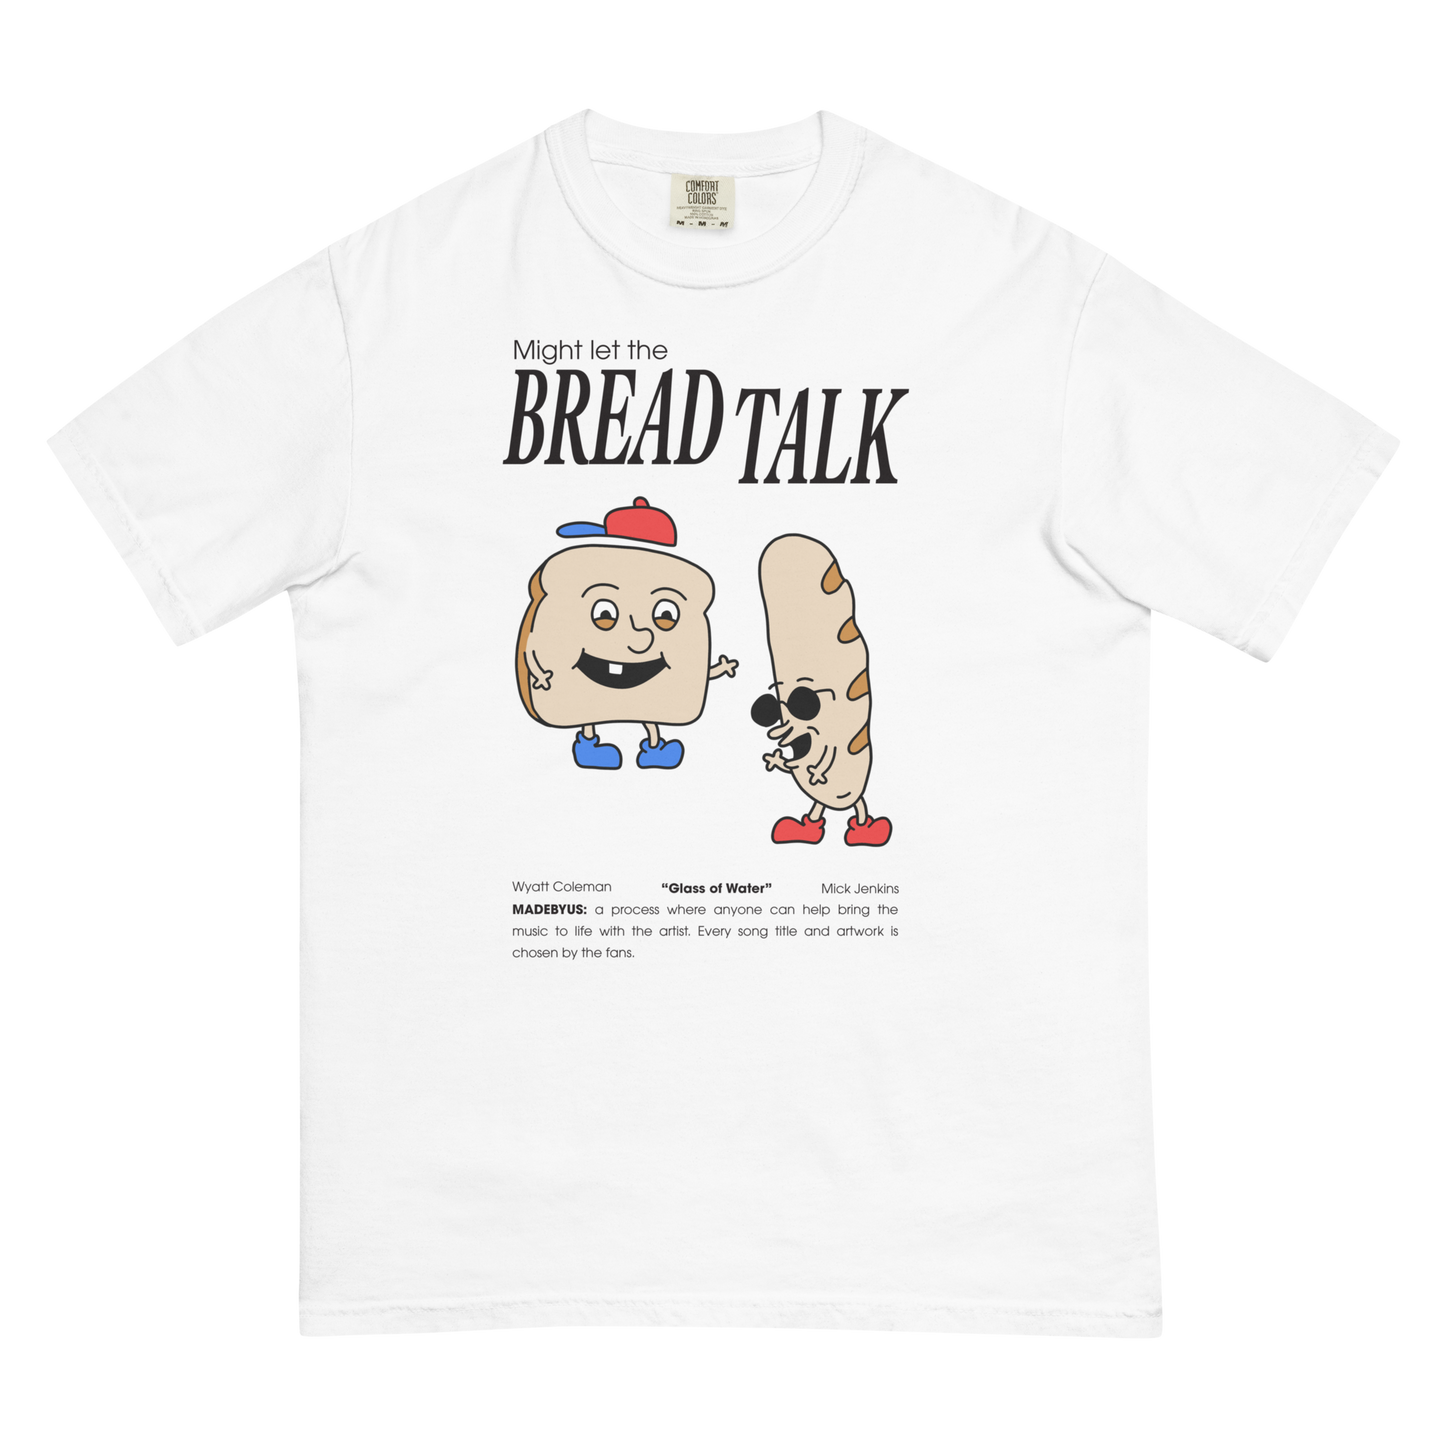 Bread Talk t-shirt